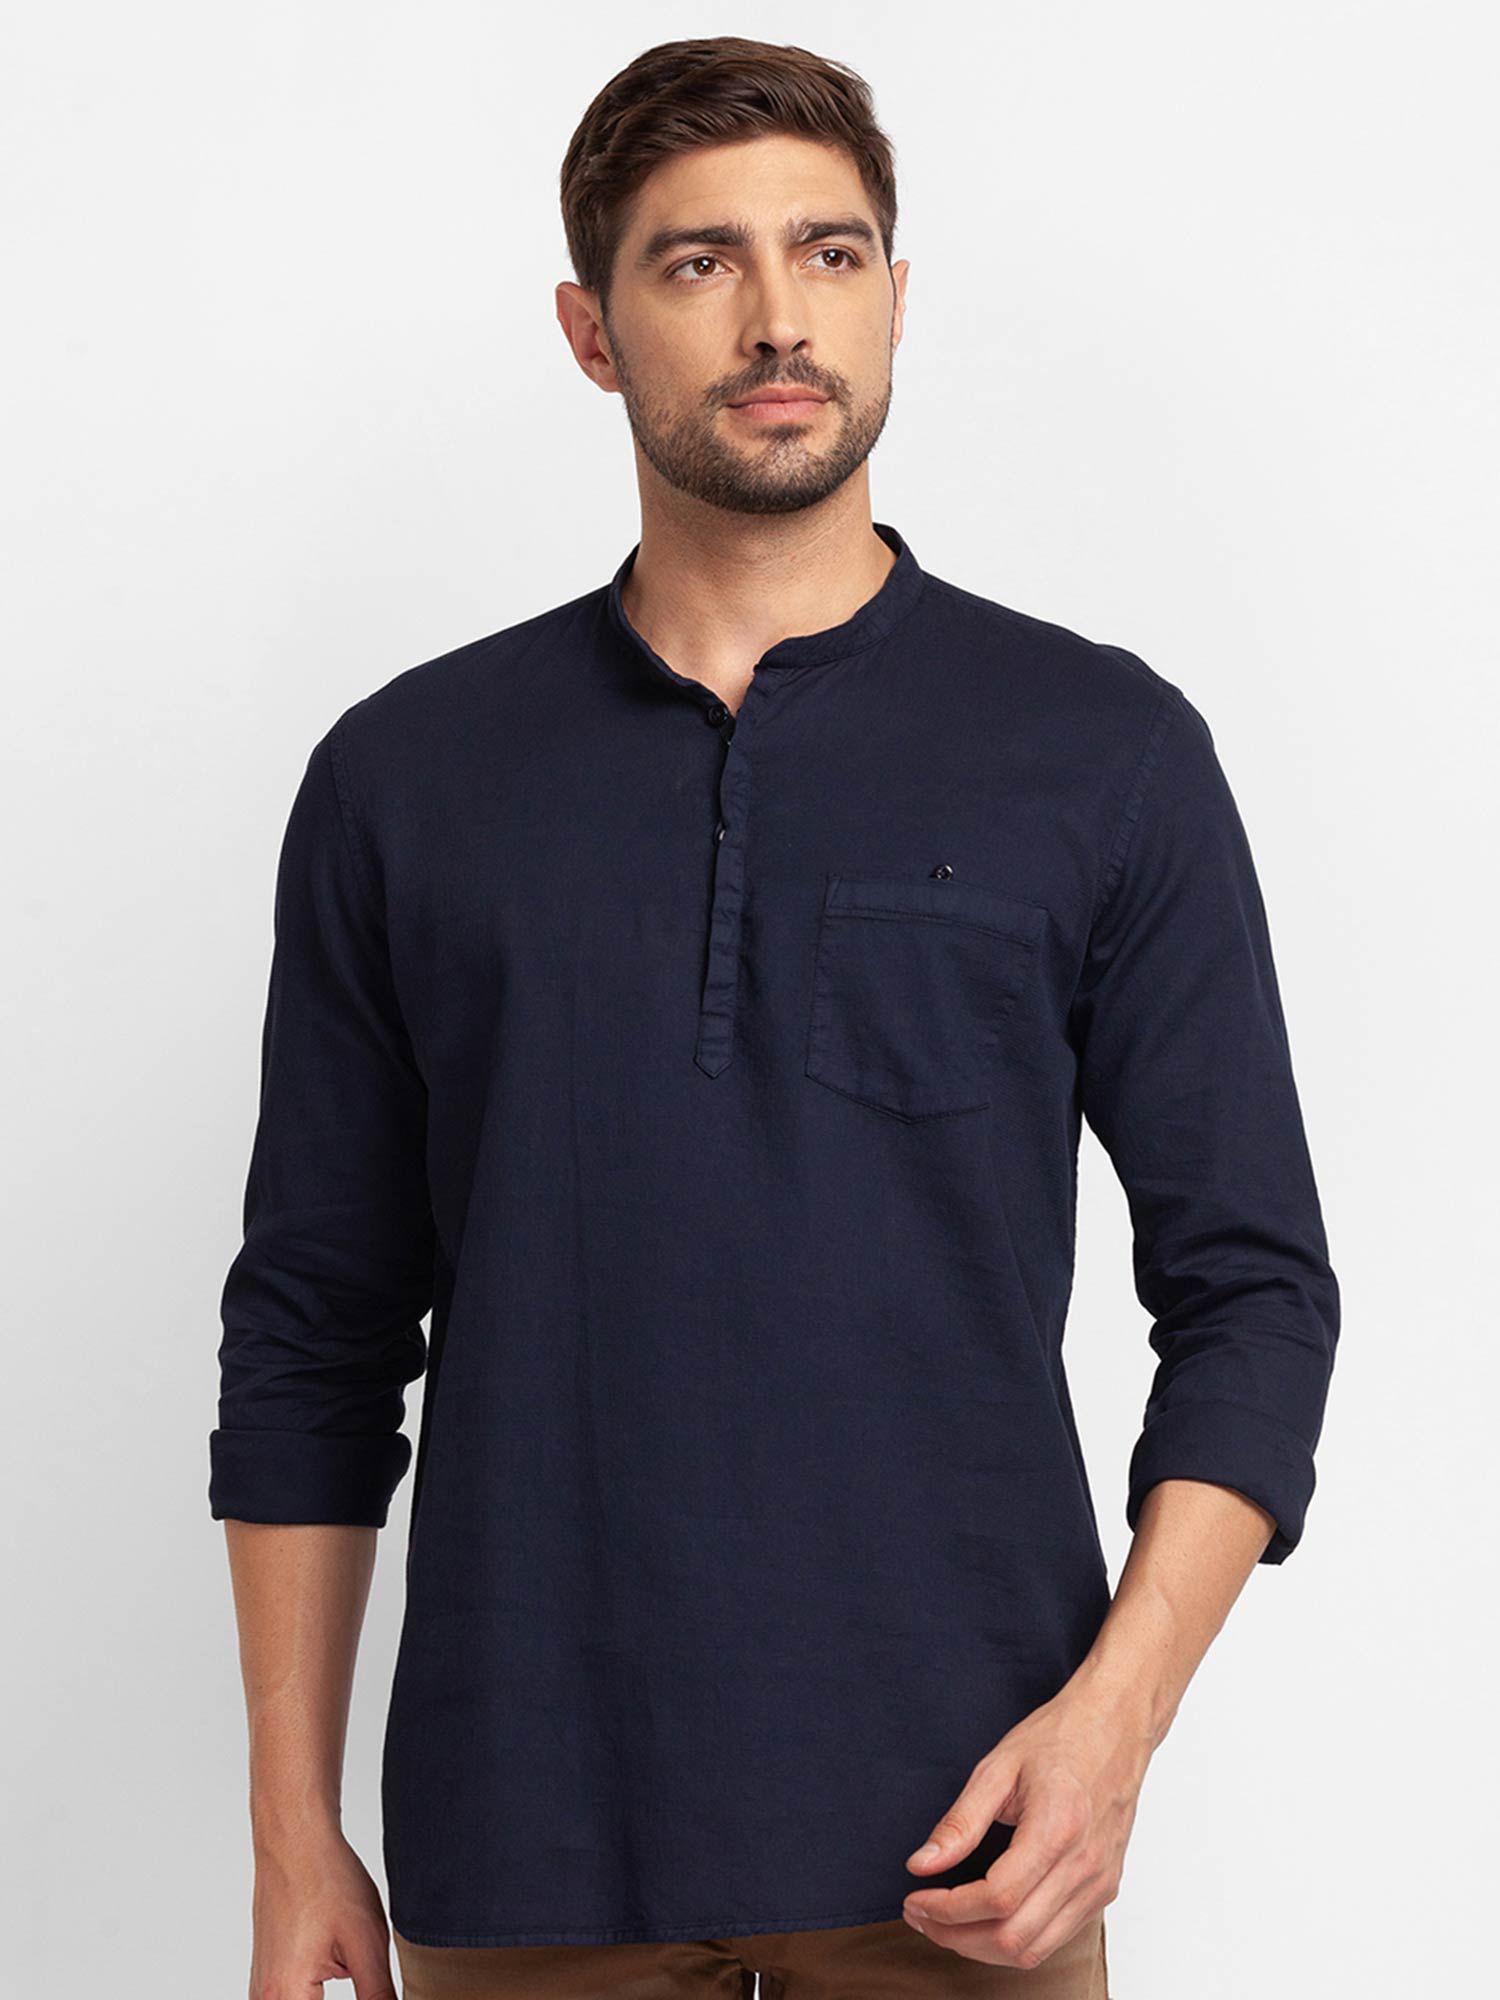 navy blue cotton full sleeve plain shirt for men